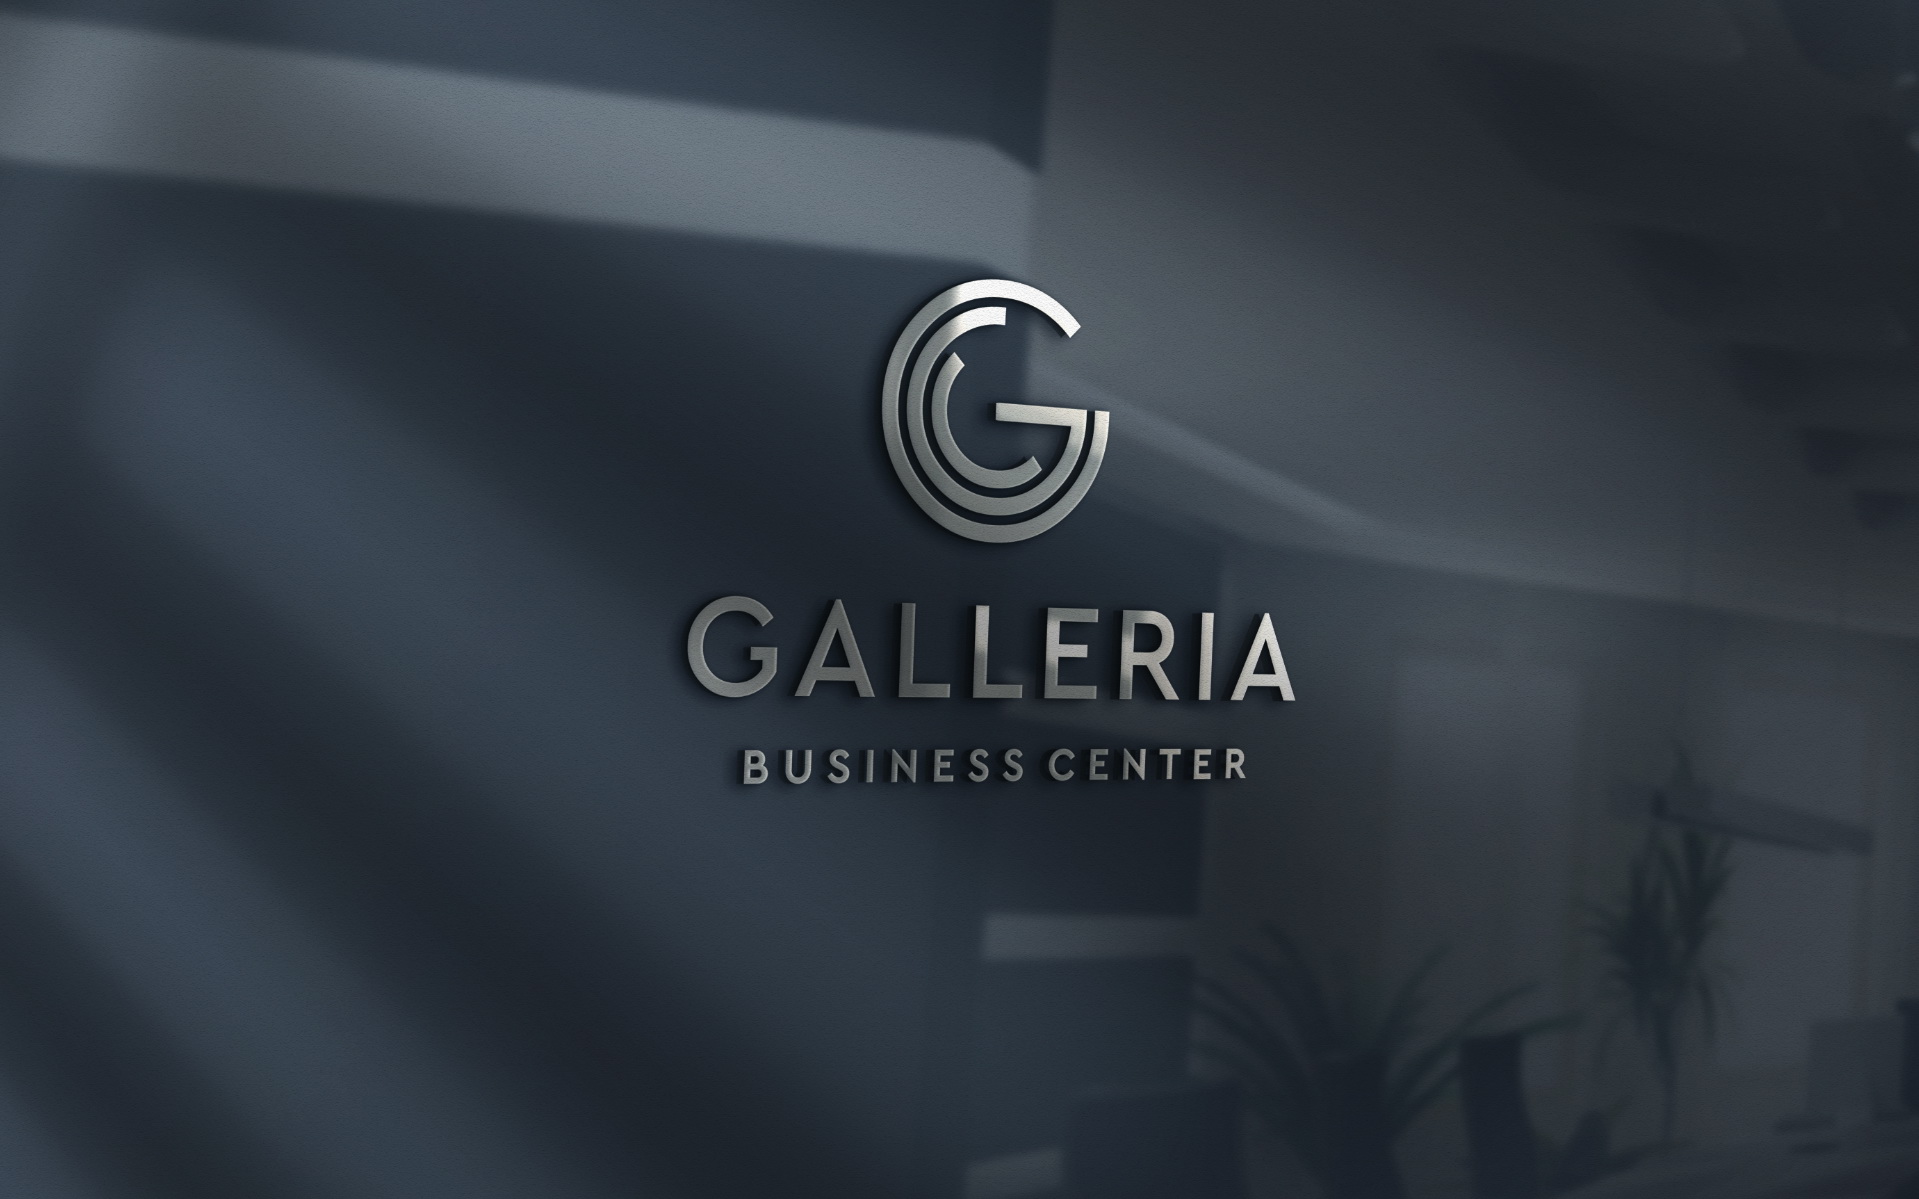 Galleria Business Center